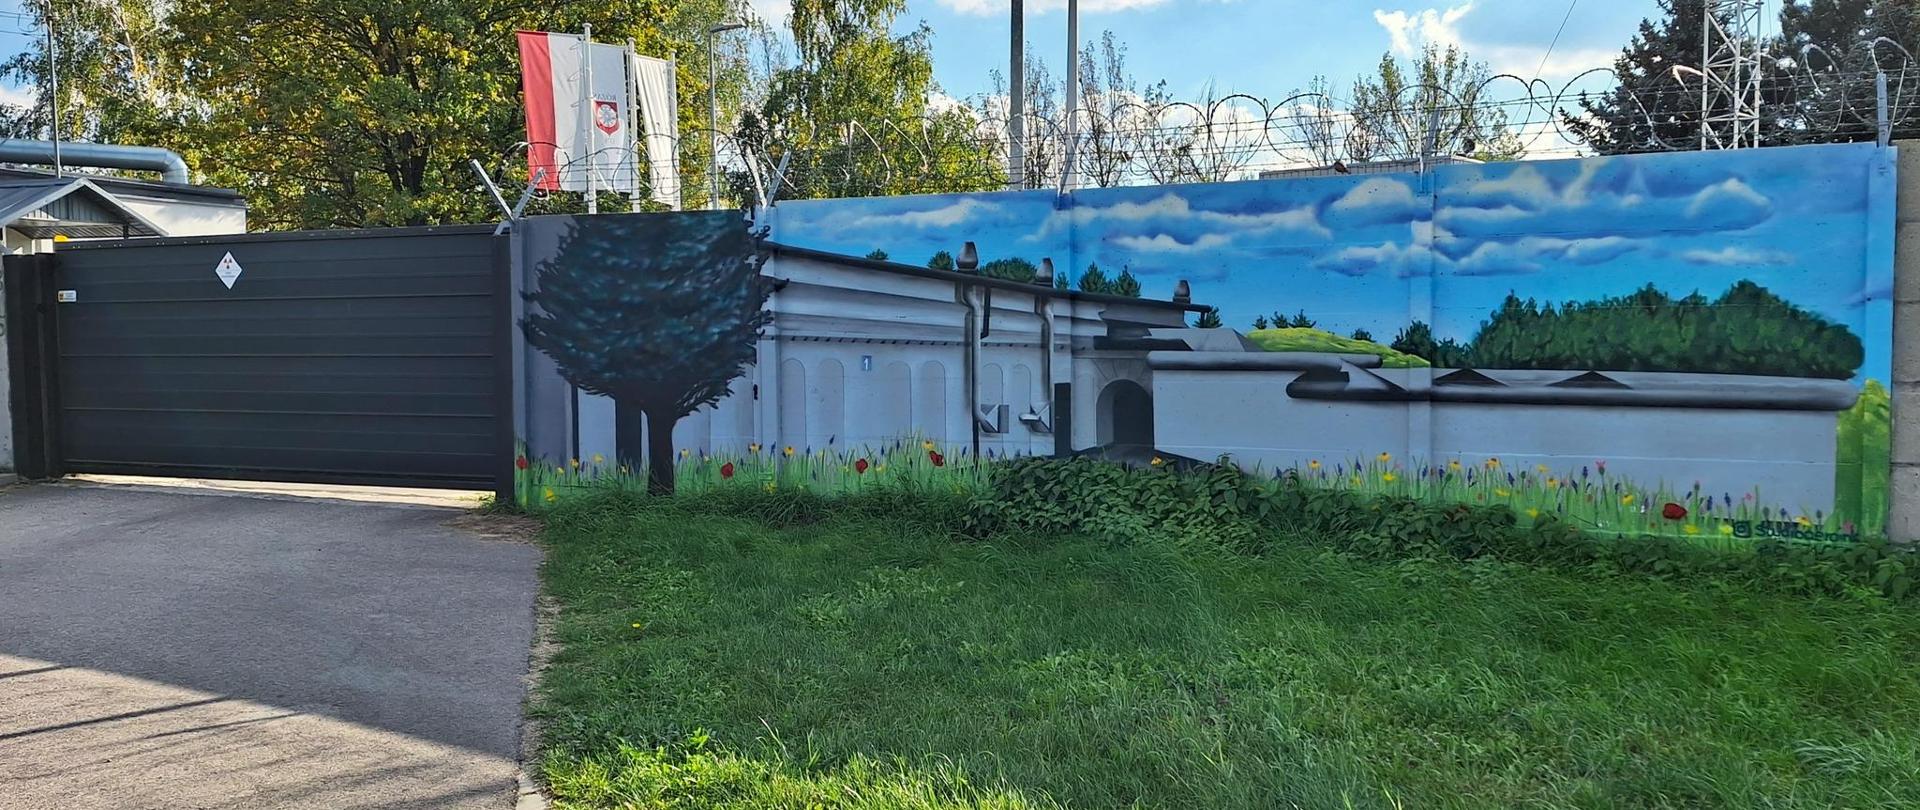 Mural przy bramie wjazdowej Krajowego Składowiska Odpadów Promieniotwórczych przedstawiający obiekt nr 1 KSOP